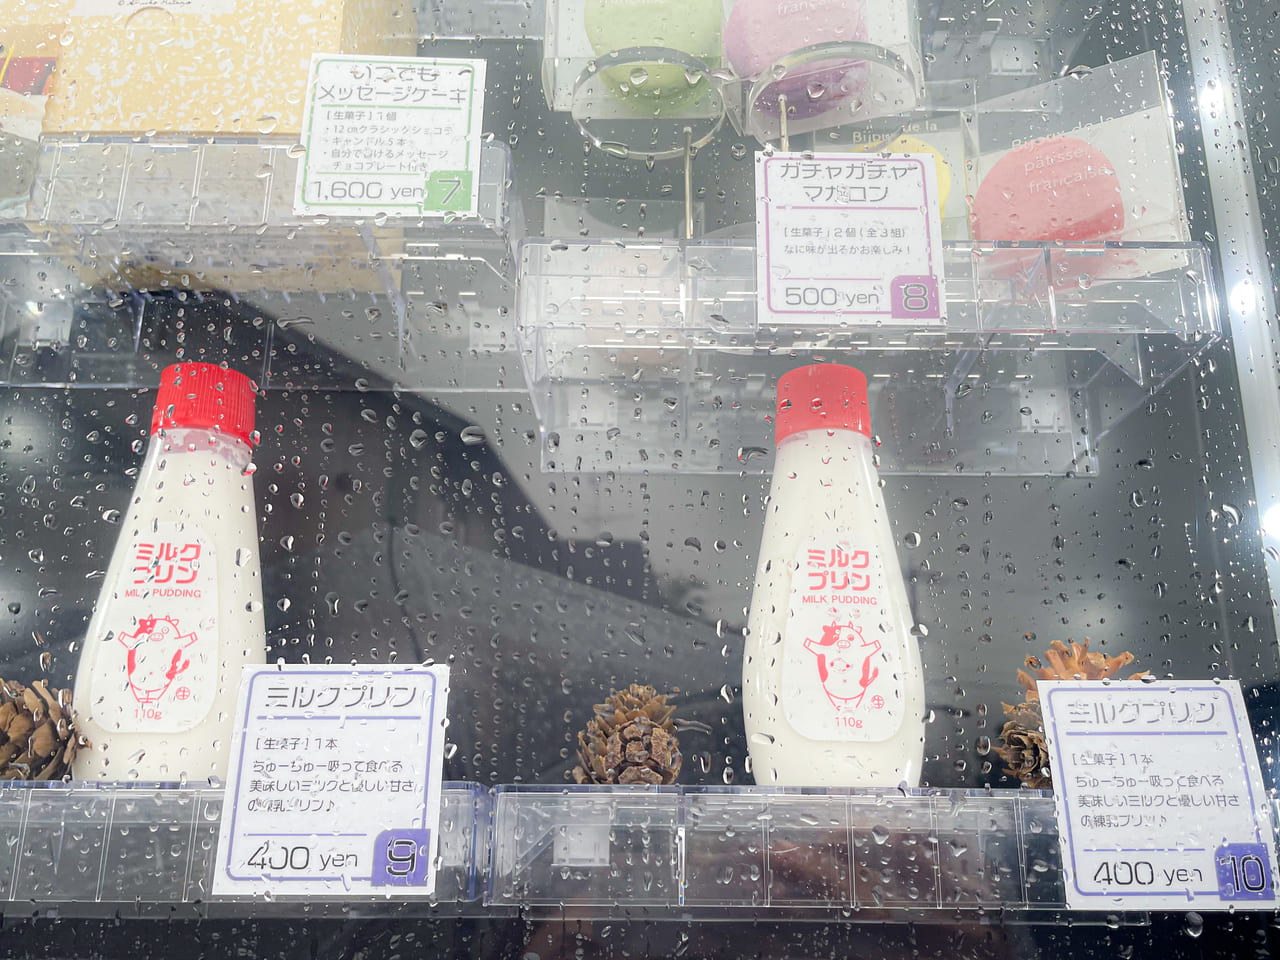 愛知県 何を販売しているの 岩倉市のケーキ屋さん アンジュール に設置されている話題の自販機を調査 号外net 小牧市 犬山市